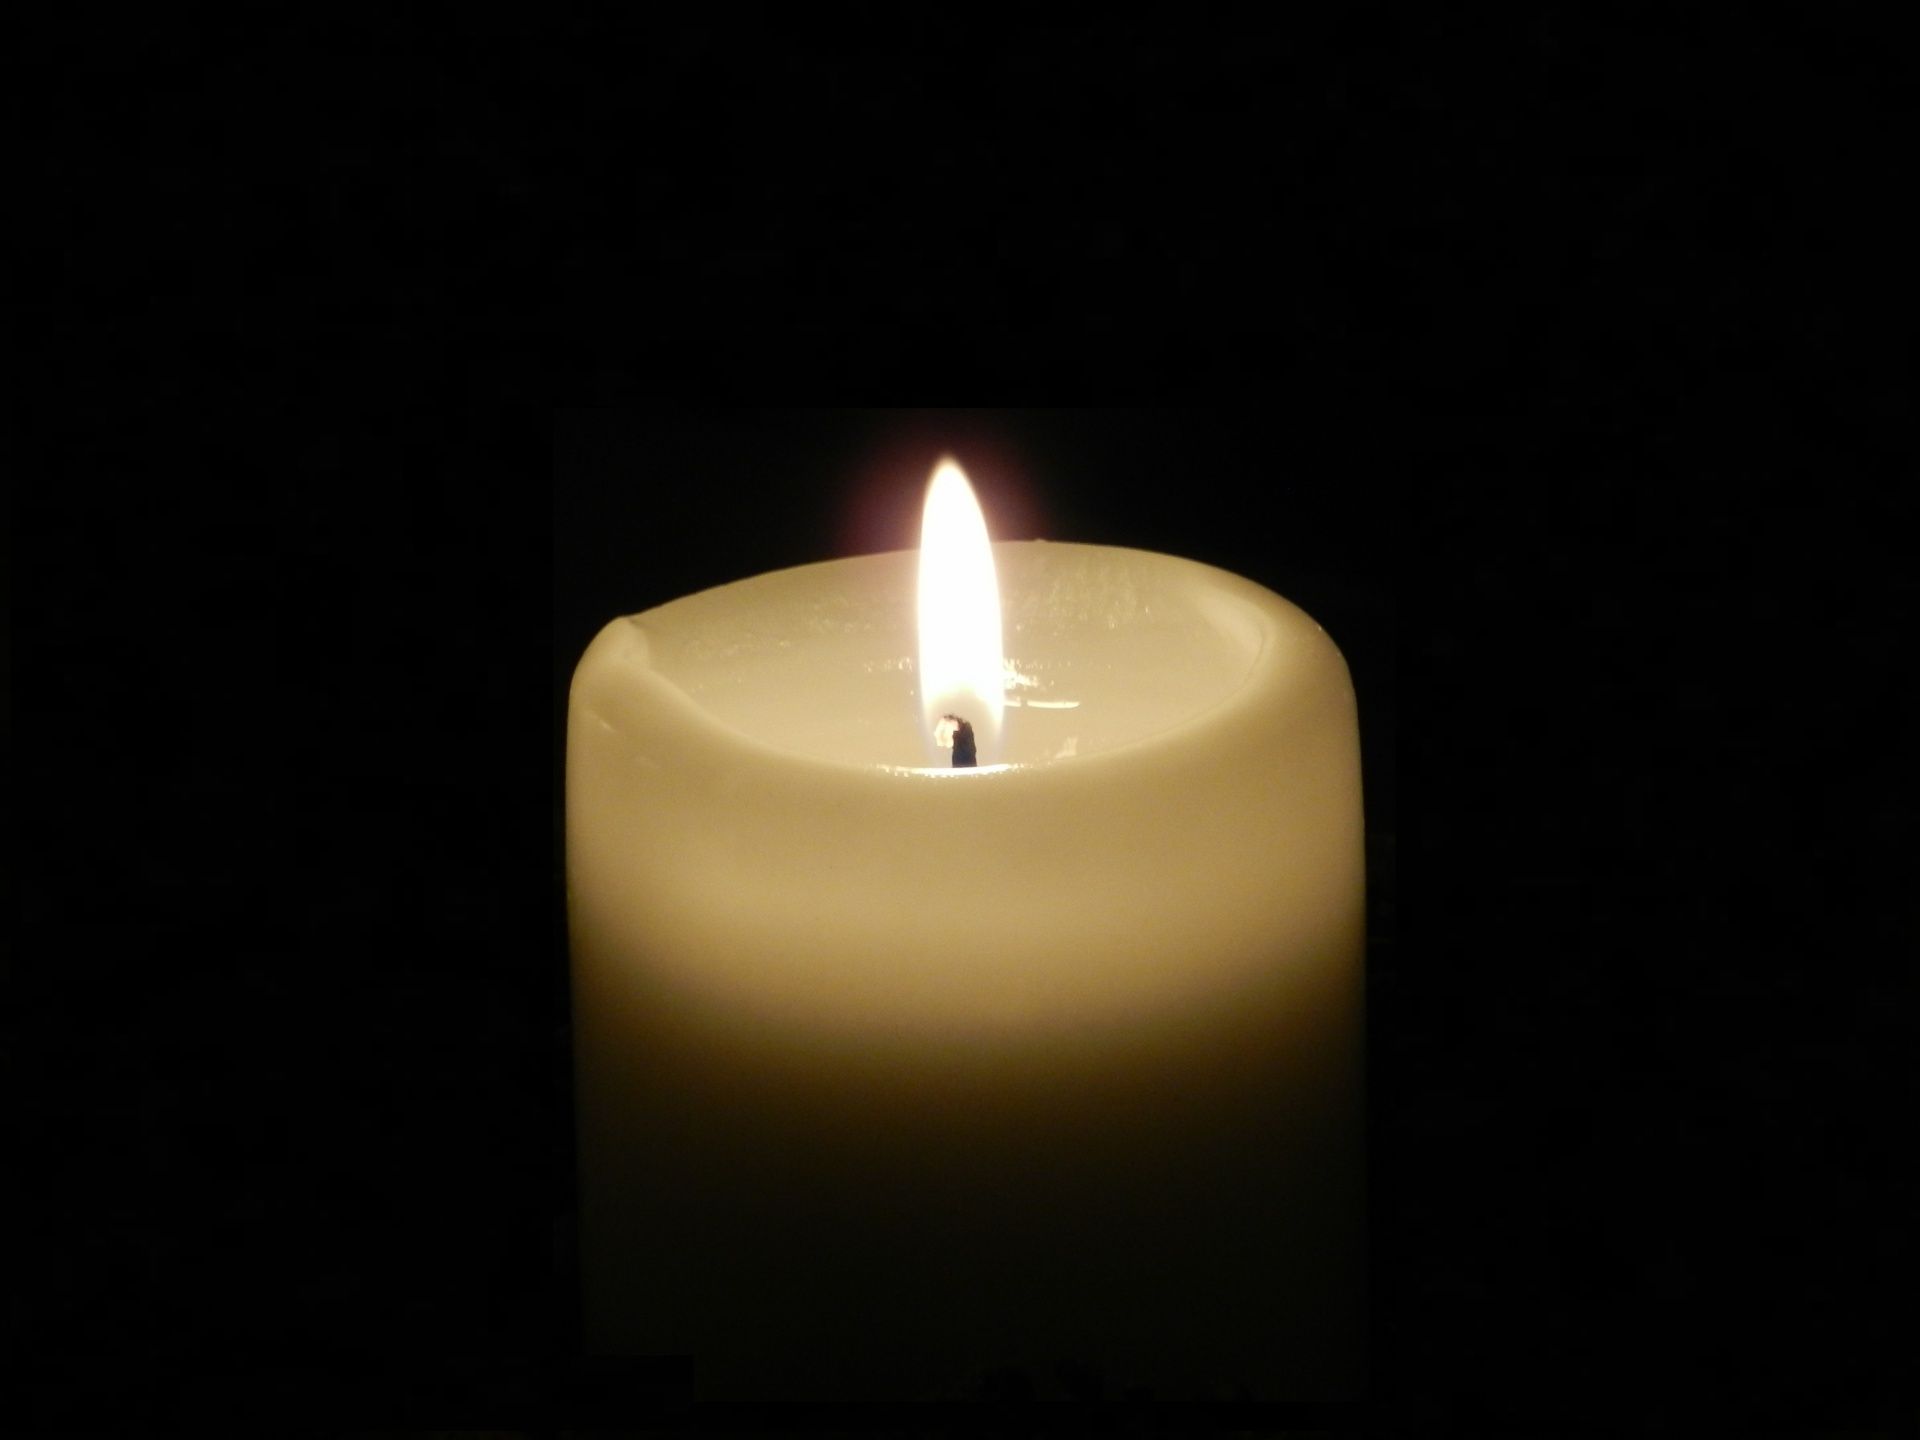 Видео свеча на черном фоне